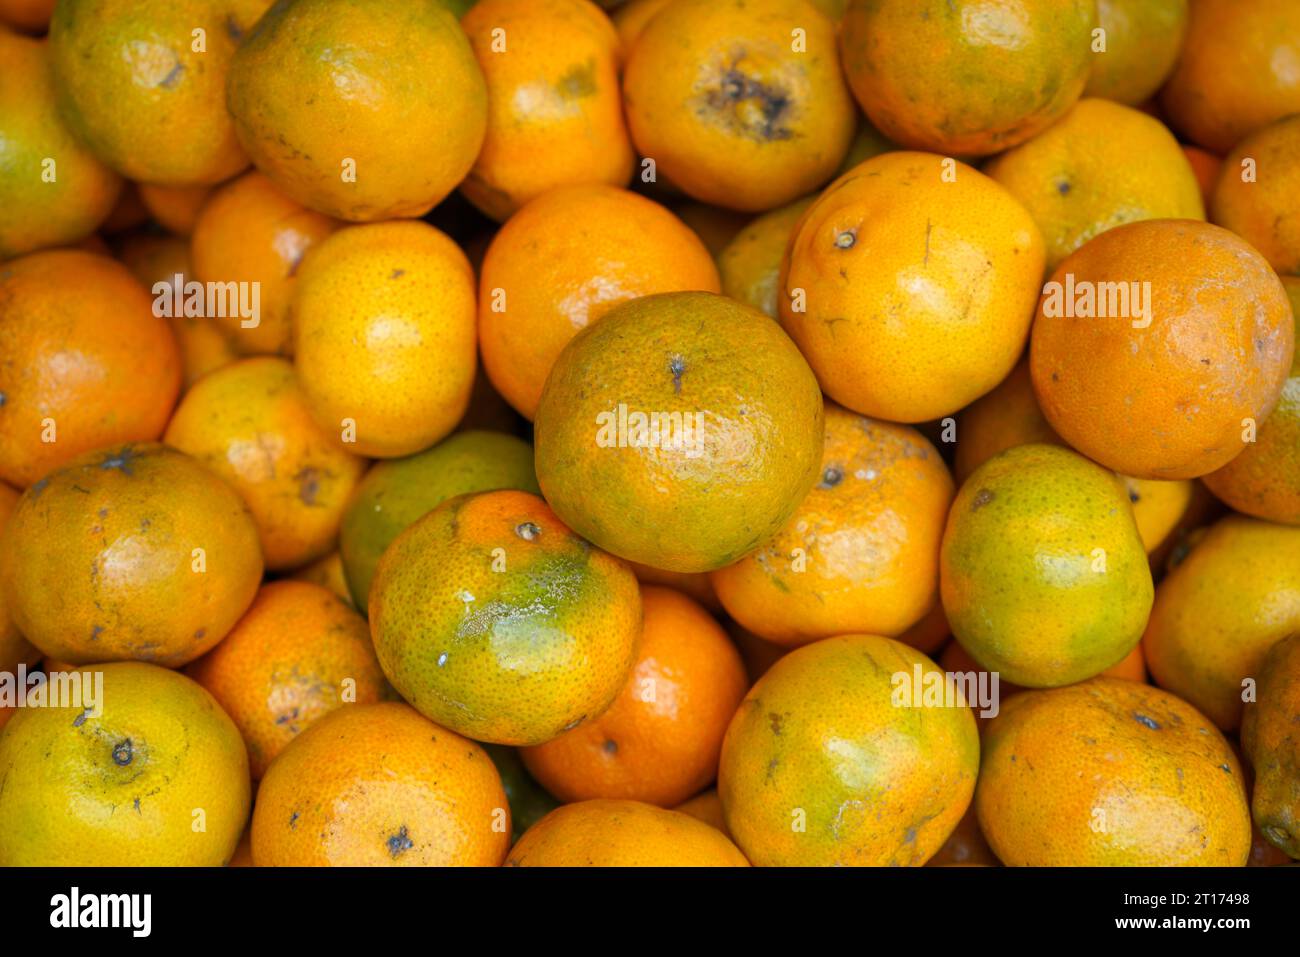 Une orange est un type d'agrumes que les gens mangent souvent. Les oranges sont une très bonne source de vitamine C. le jus d'orange est important. Banque D'Images